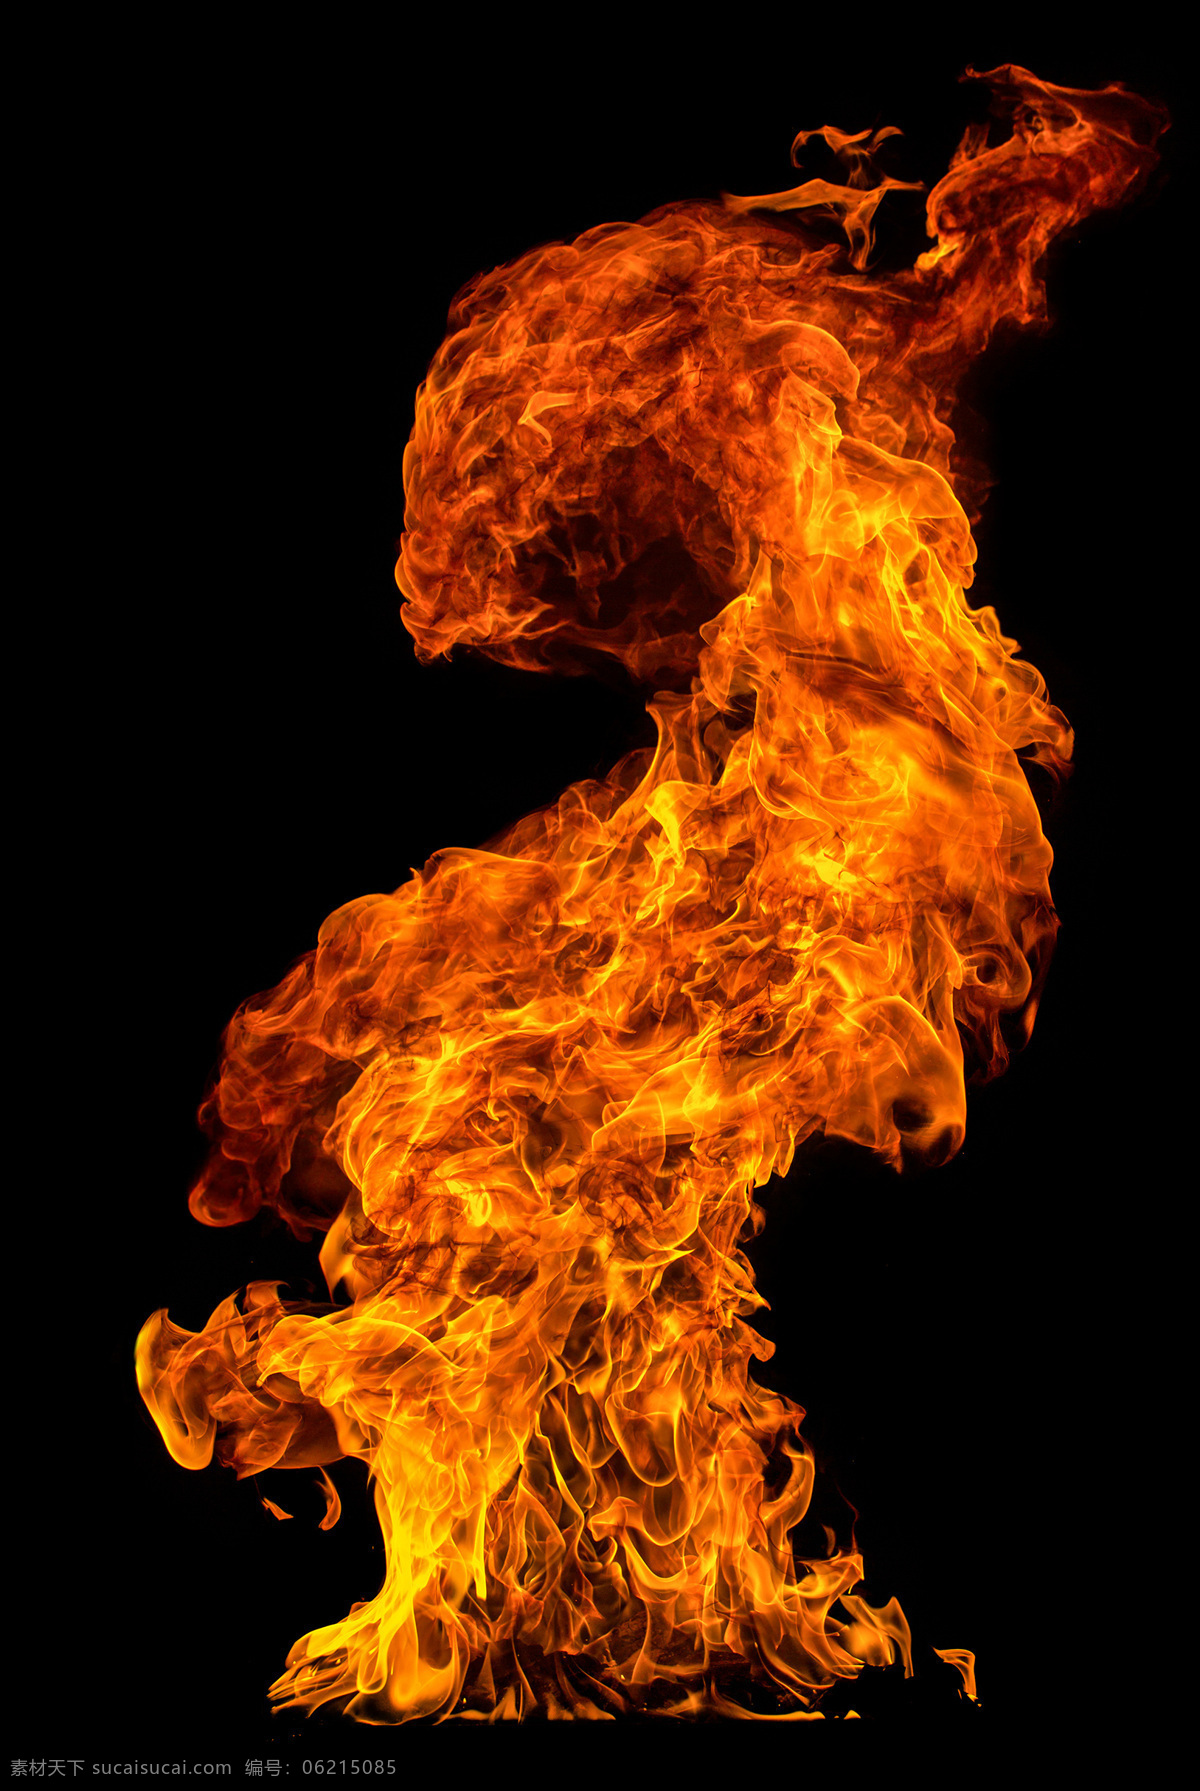 火山 爆炸 火焰 背景 烟雾 黑色 晚上 大伙 柴火 燃烧 炭火 烤火 火焰素材 火素材 自然景观 自然风光